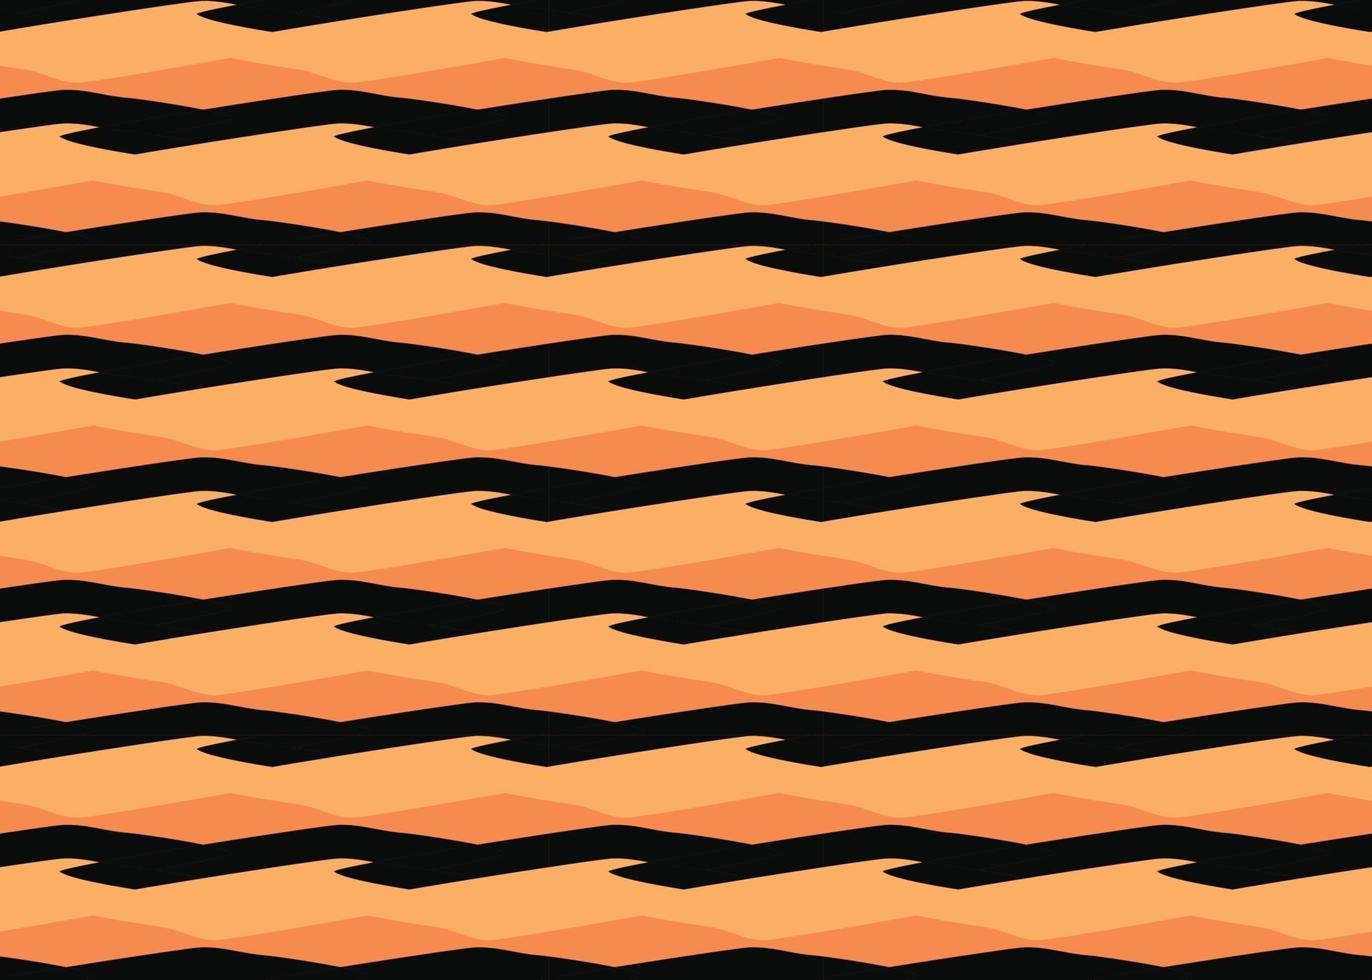 Vektor Textur Hintergrund, nahtloses Muster. handgezeichnete, orange, schwarze Farben.